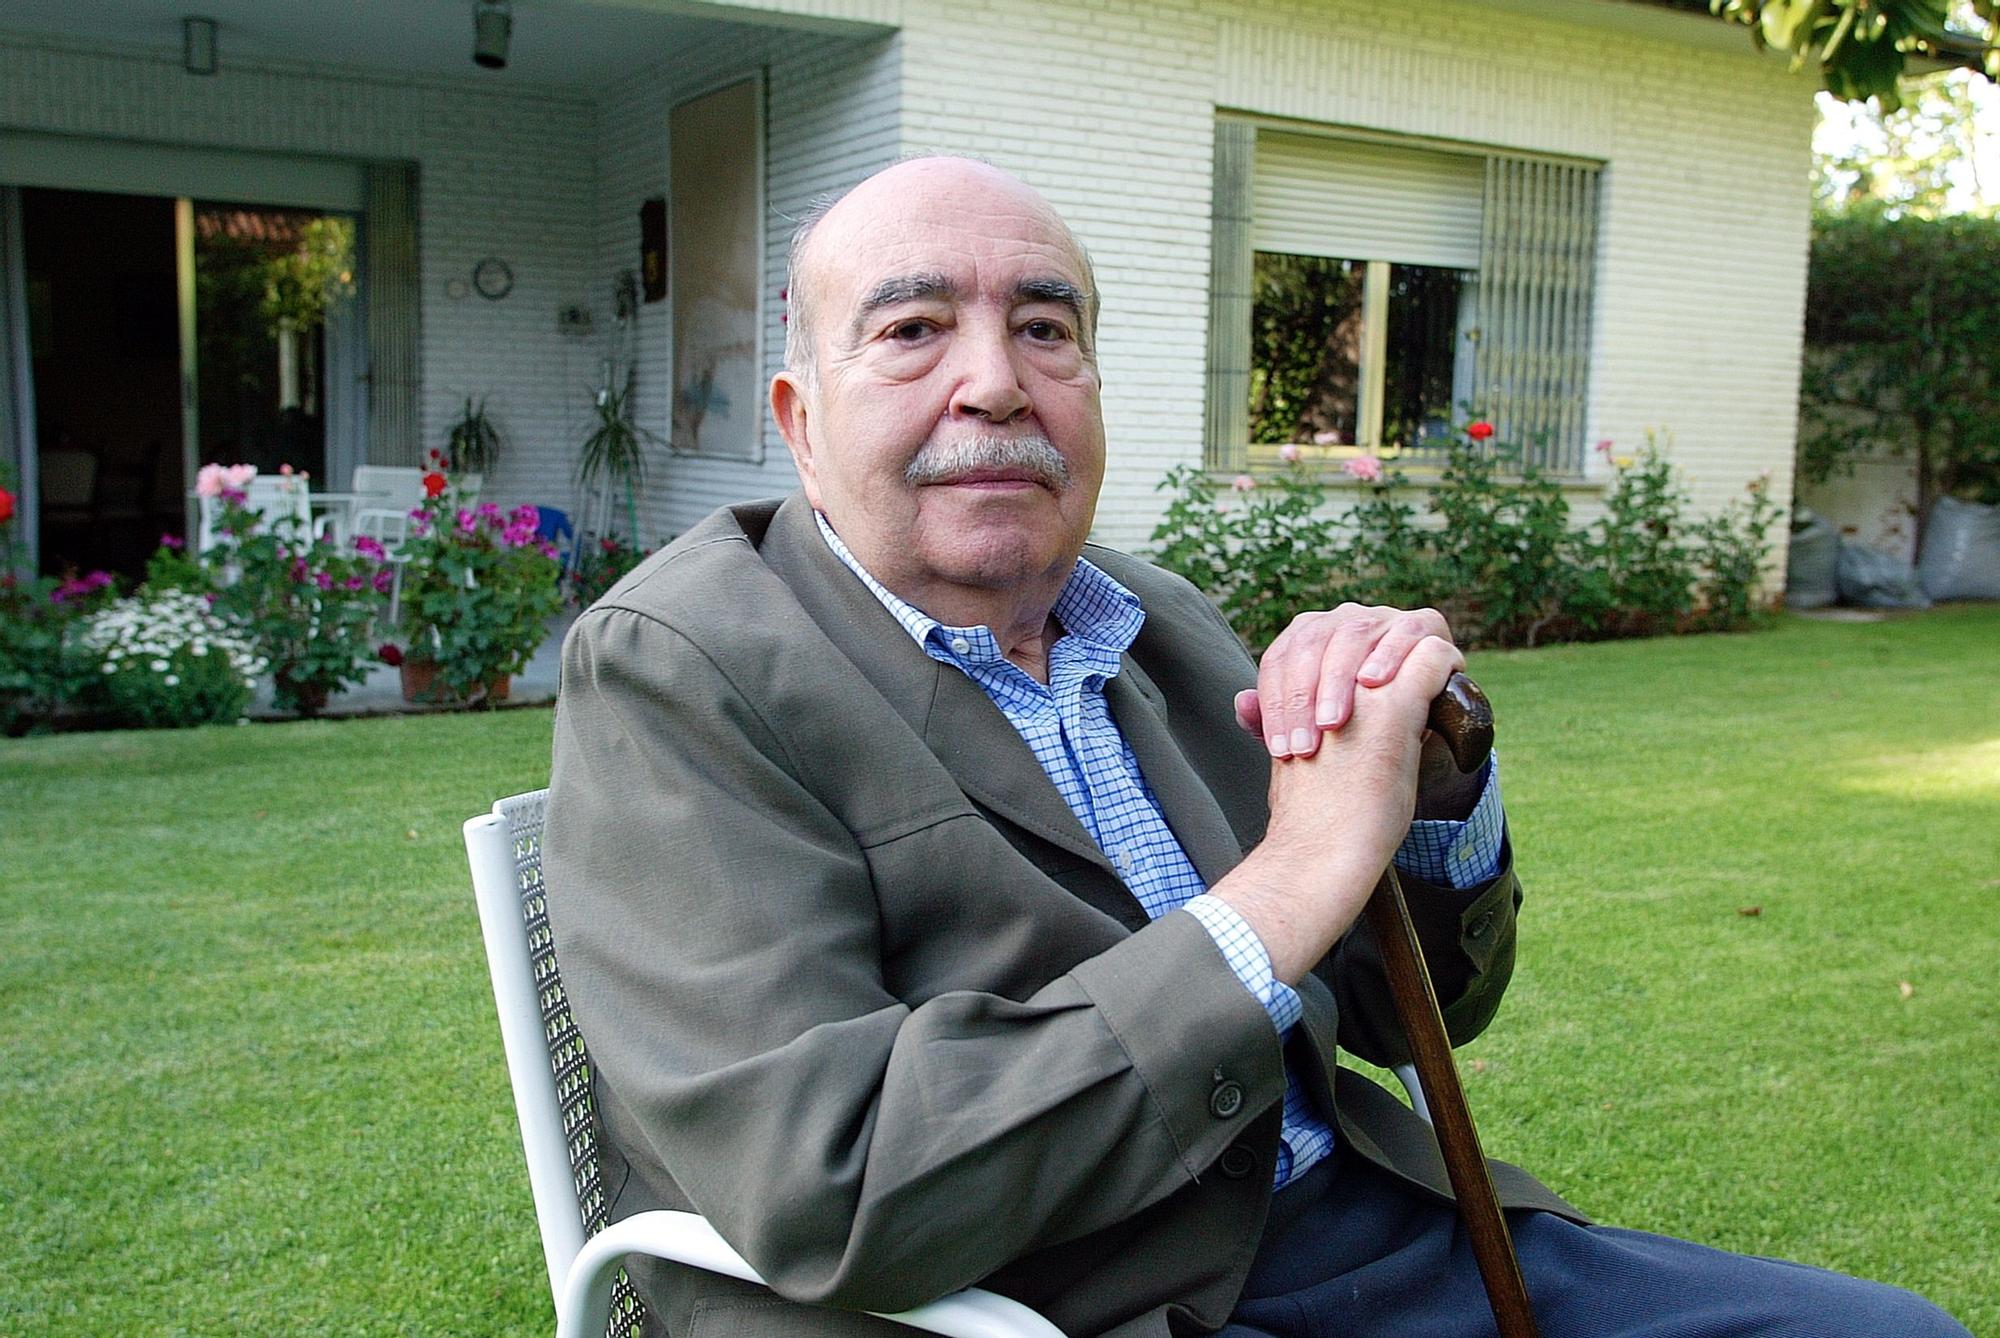 Fernando Lázaro Carreter